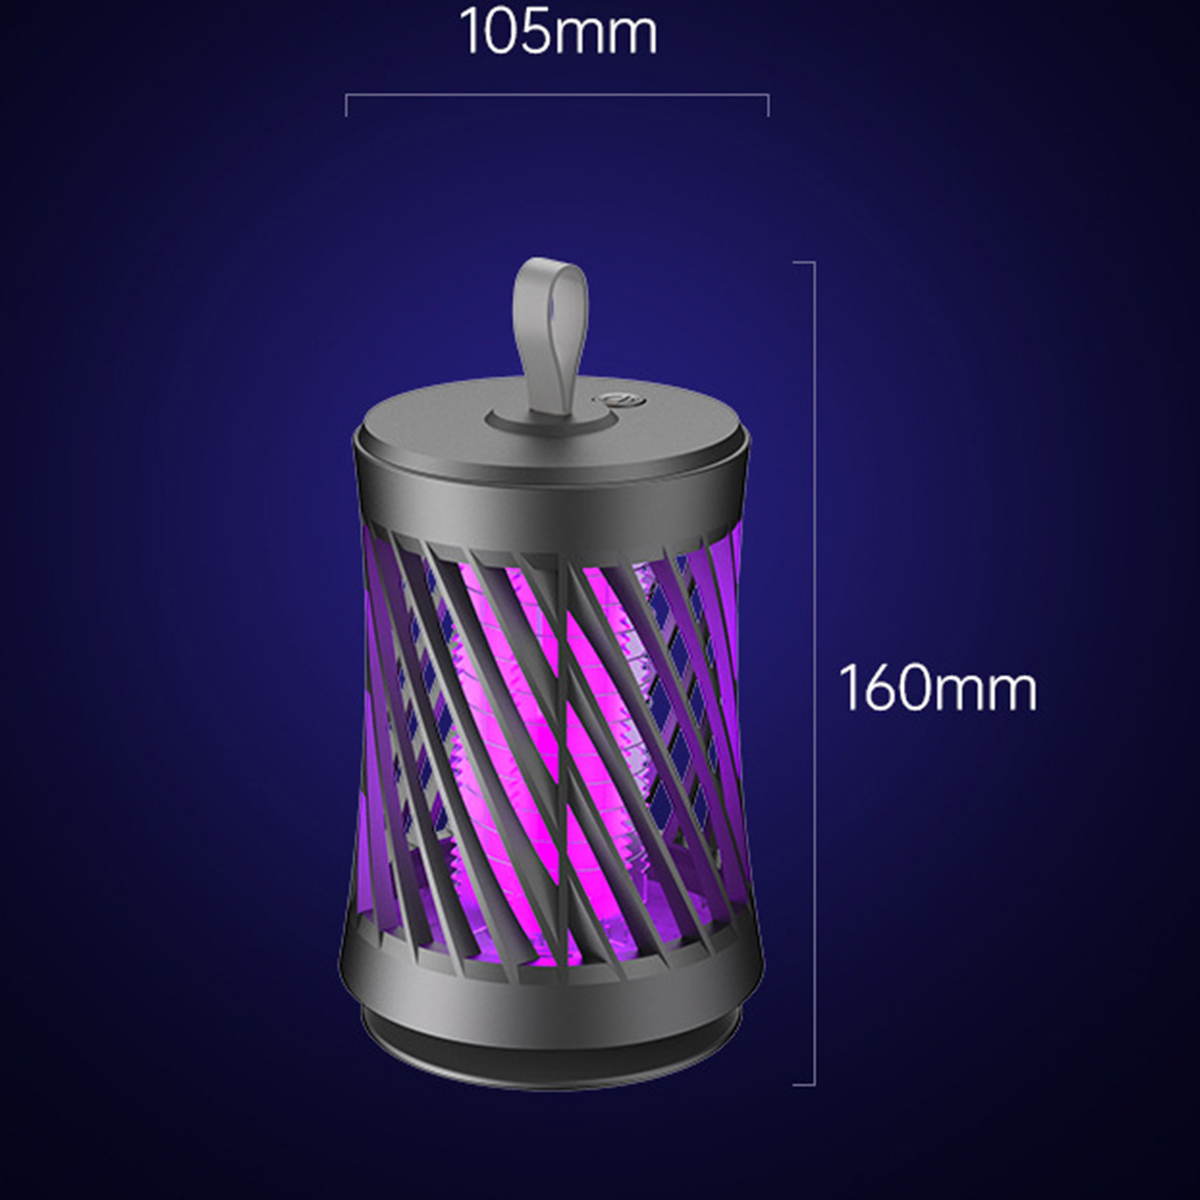 BRIGHTAKE USB Wiederaufladbare Moskito-Killer-Lampe Moskito-Fang|50sqm Insektenvernichter Stiller Photokatalysator